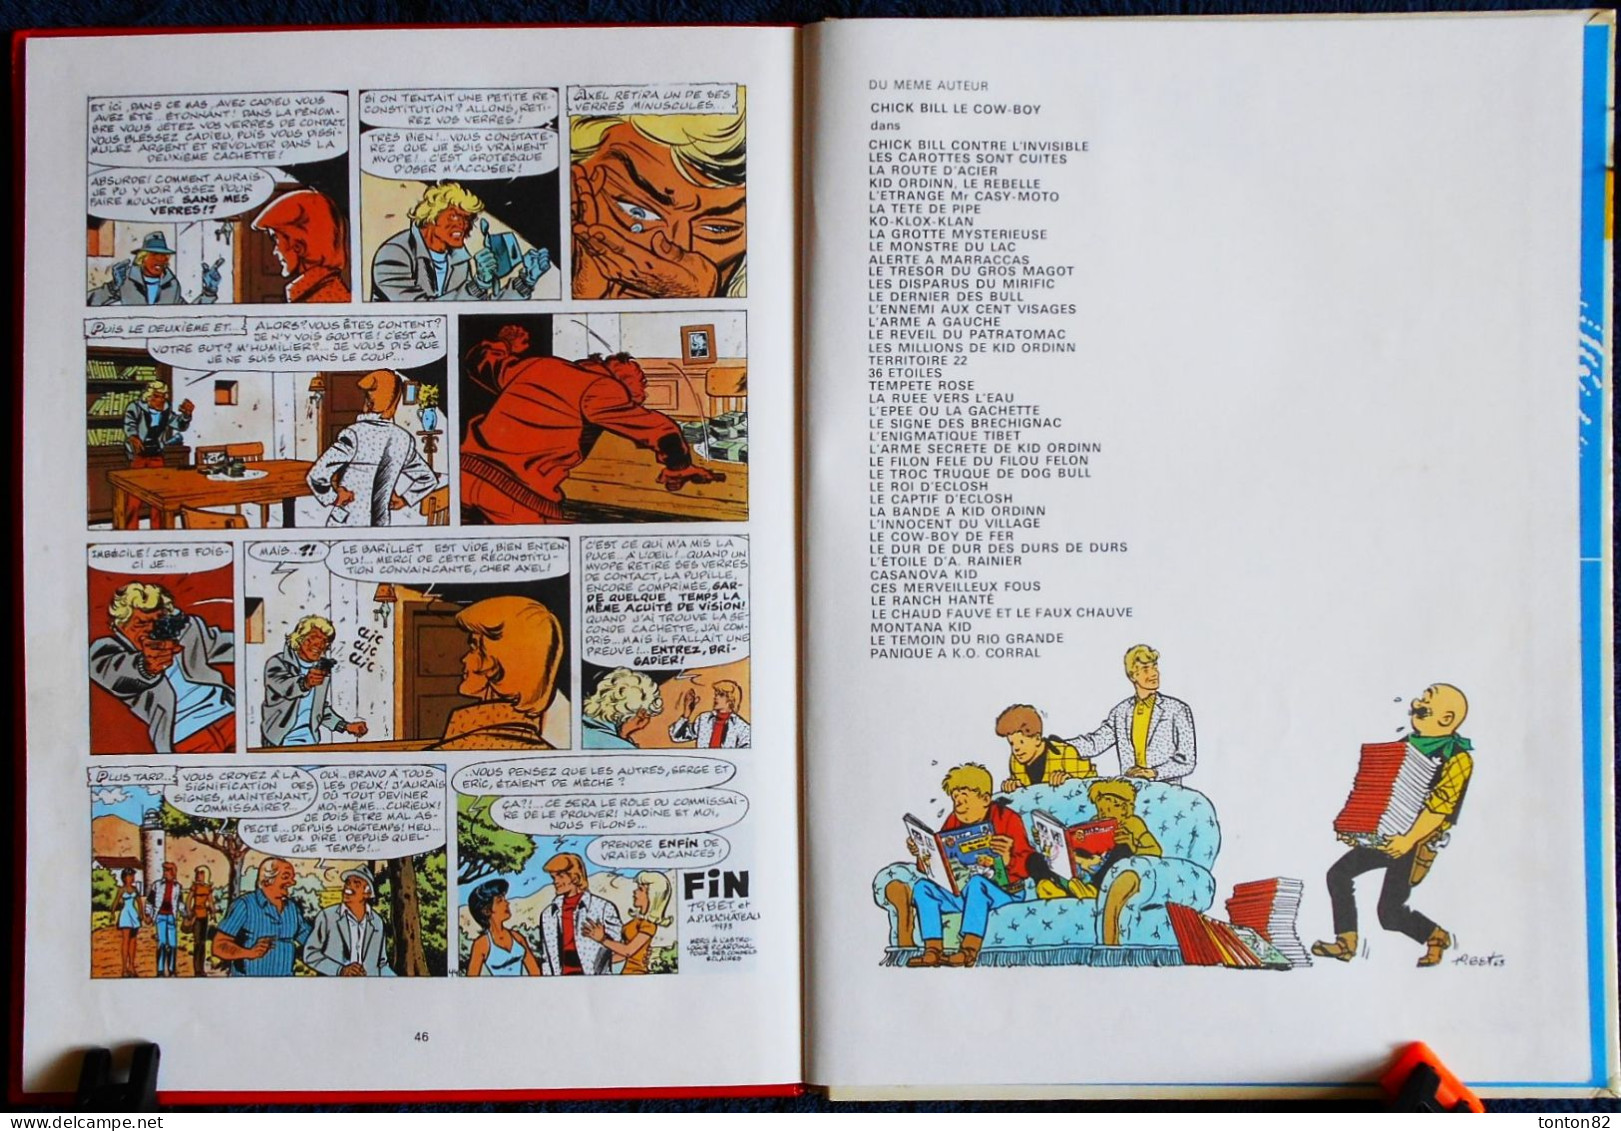 Tibet et A.P. Duchateau - RIC HOCHET 19 - Les signes de la peur - Éditions du Lombard - ( 1979 ) .